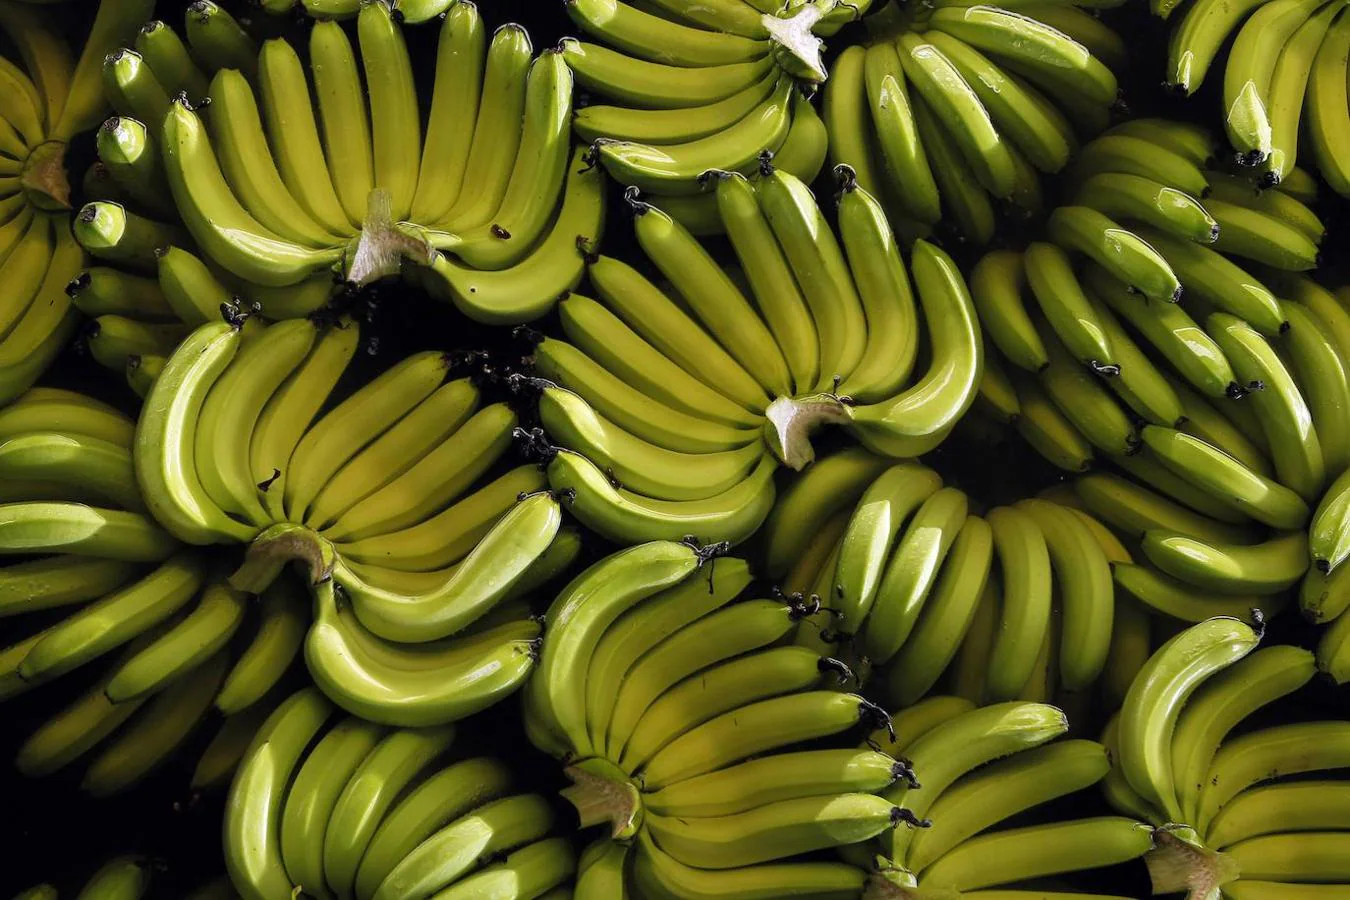 Plátano. El plátano es una fruta que puede resultar idónea para comer entre horas. Además de su aporte energético y de ser fuente de vitaminas y minerales, cuenta con 3,4 gramos de fibra por cada 100.